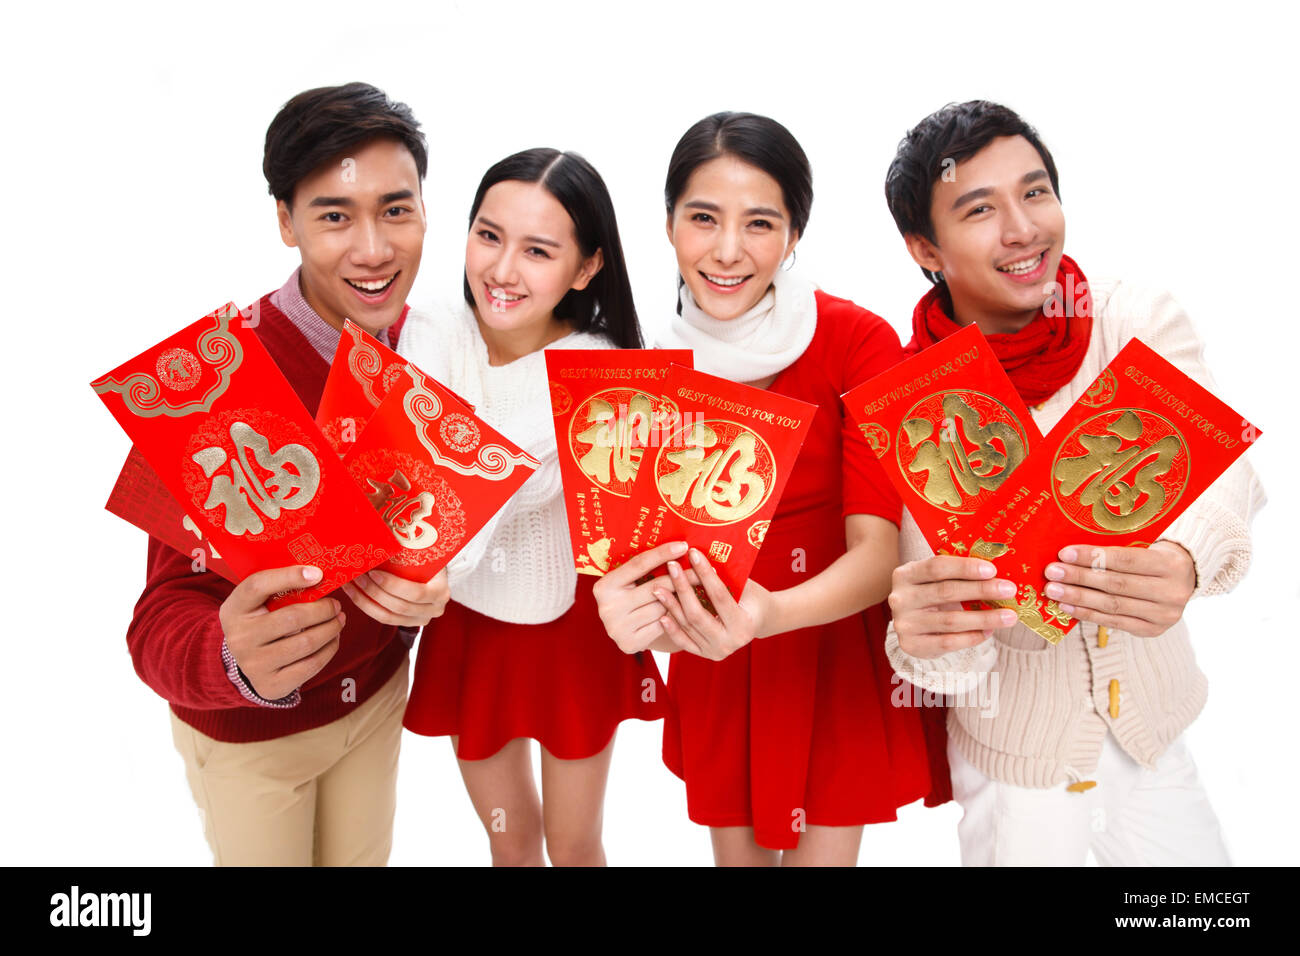 Les quatre jeunes hommes et femmes sont emballés avec une enveloppe rouge Banque D'Images